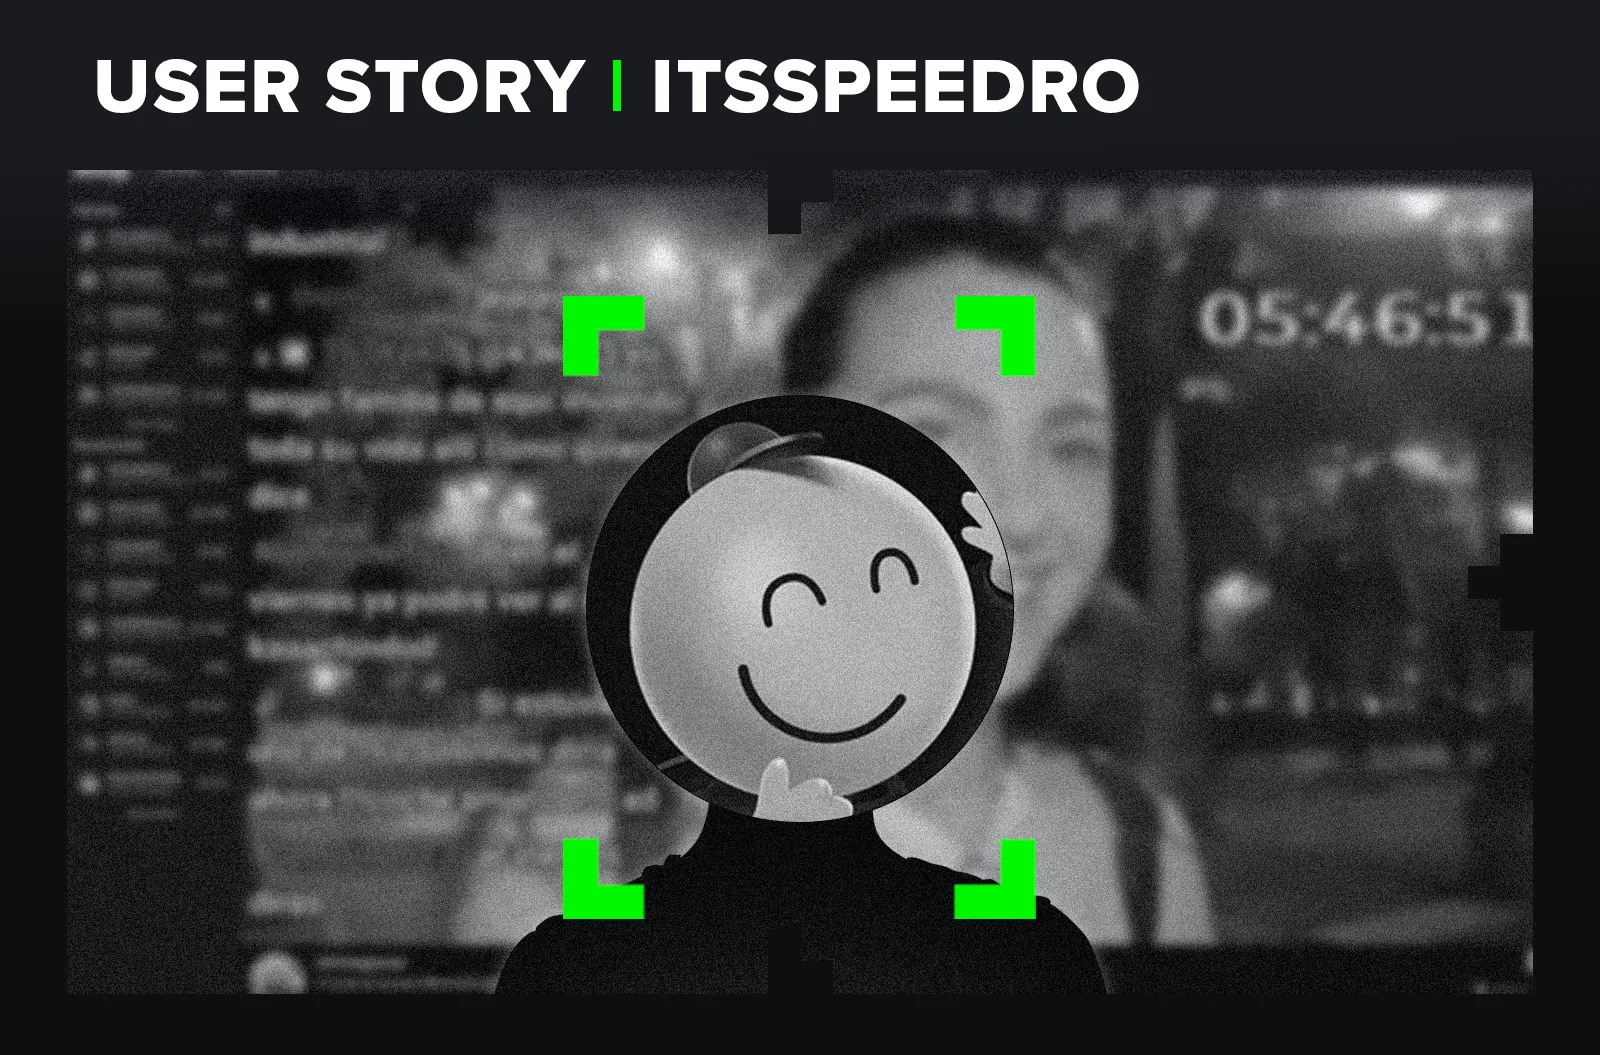 ItssPeedro - User Story